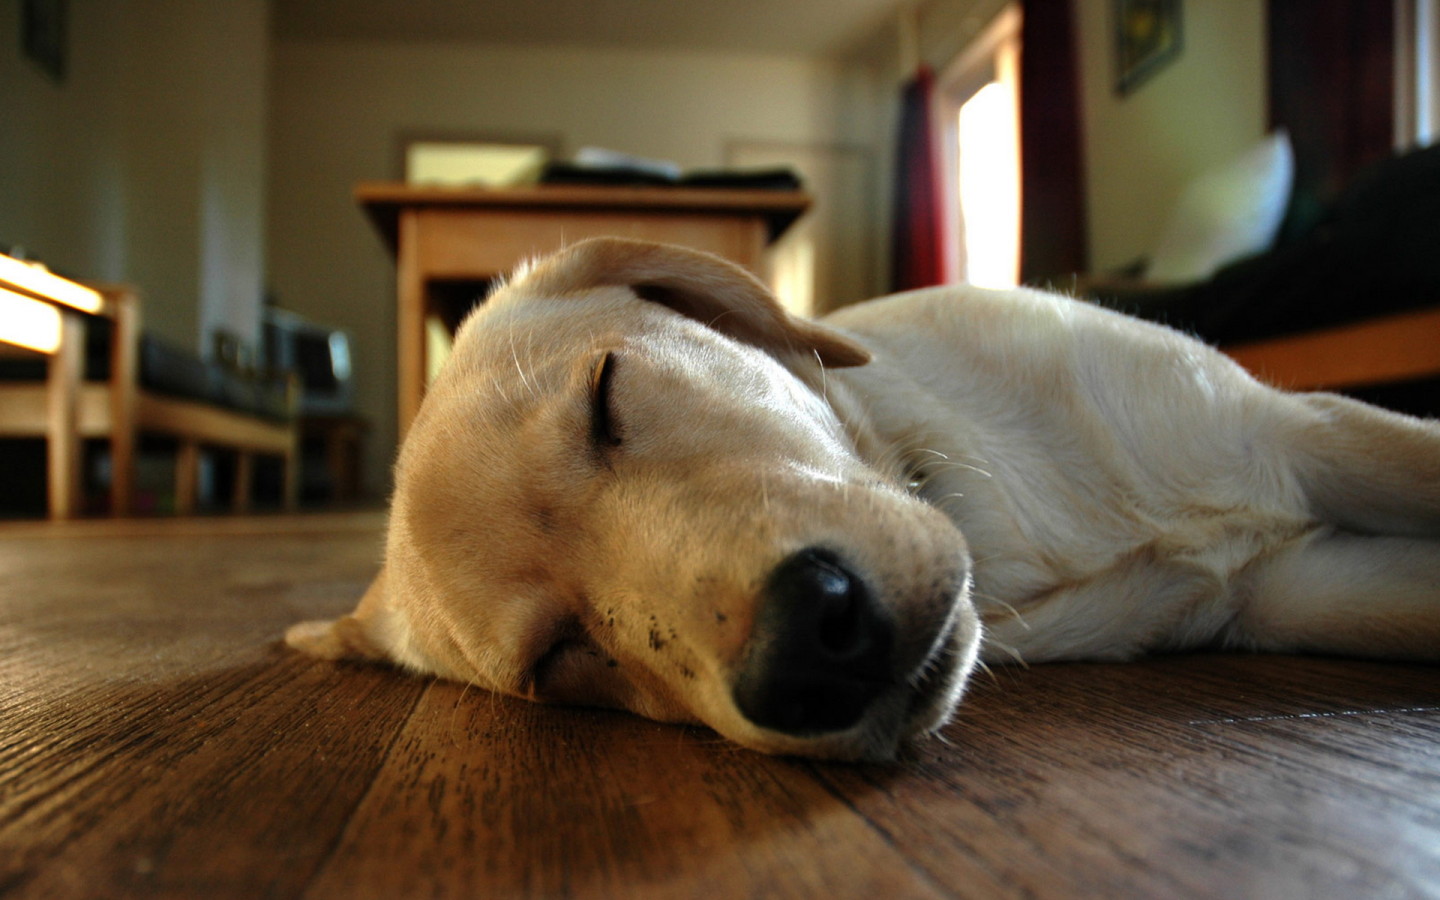 Sleeping dog on floor